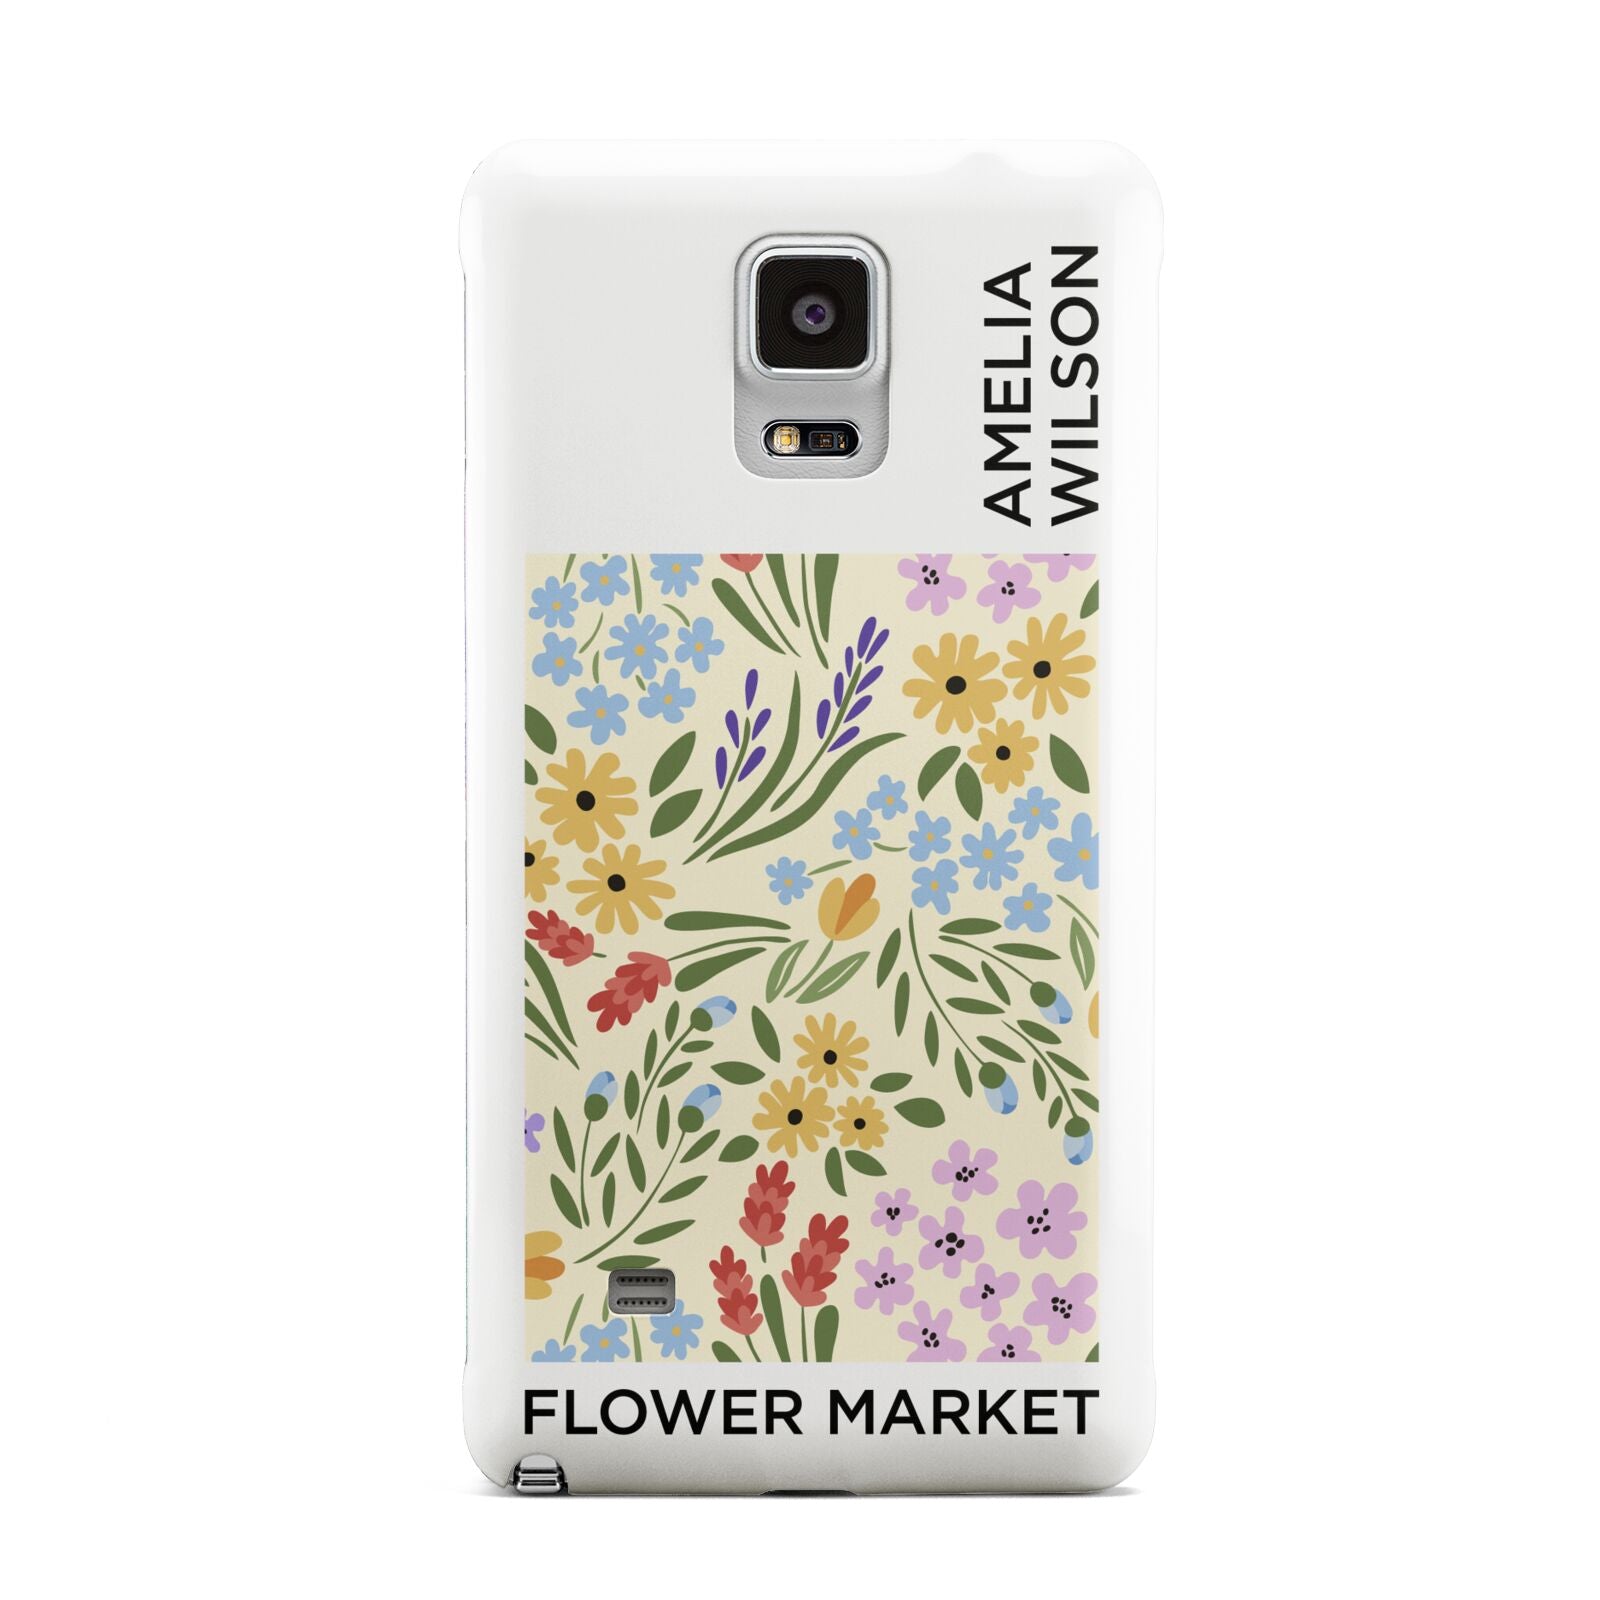 Paris Flower Market Samsung Galaxy Note 4 Case